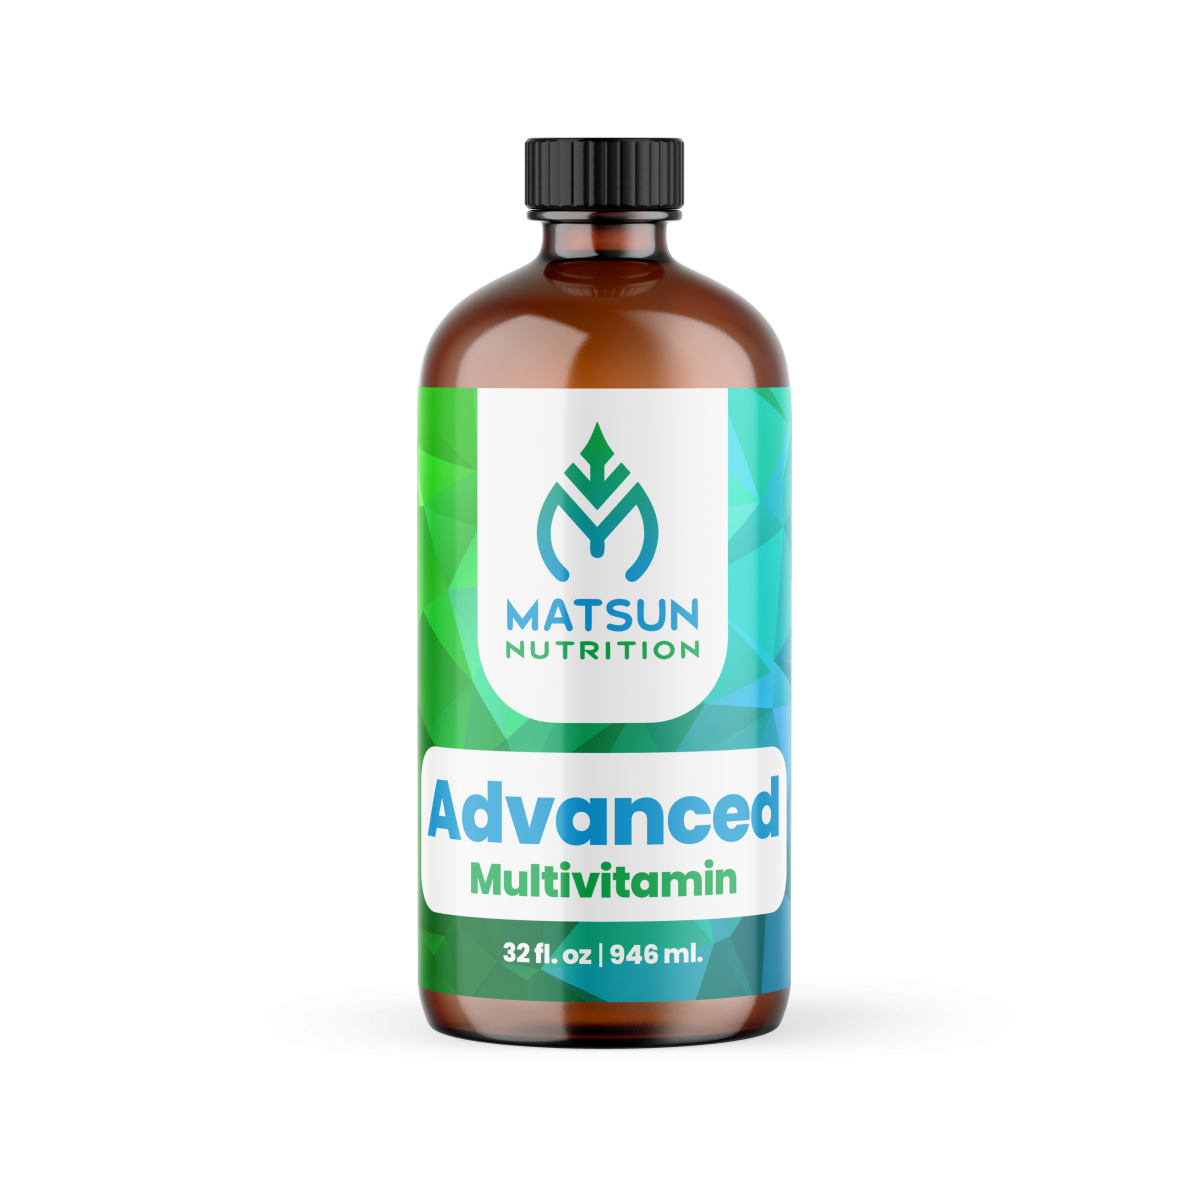 Advanced_Multivitamin_Matsun_Nutrition